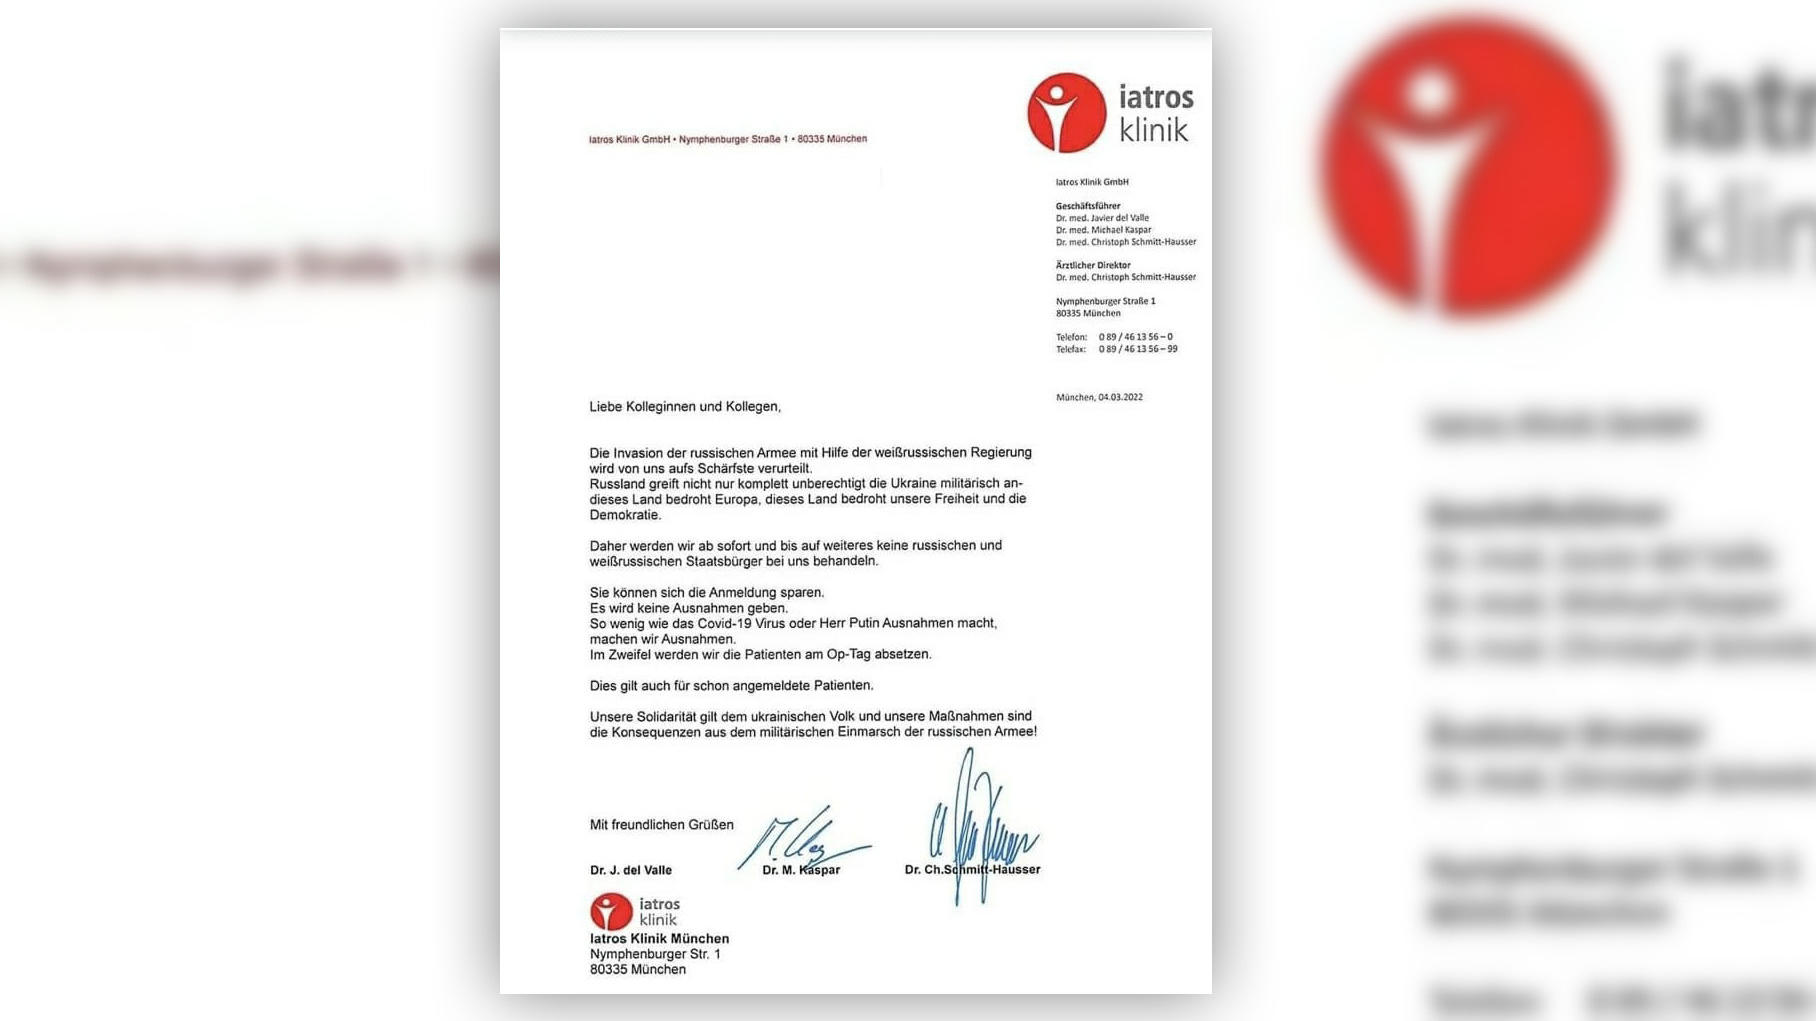 Dieser Brief einer Privatklinik aus München vom vergangenen Freitag (.04.03) sorgt für viel Kritik im Netz.